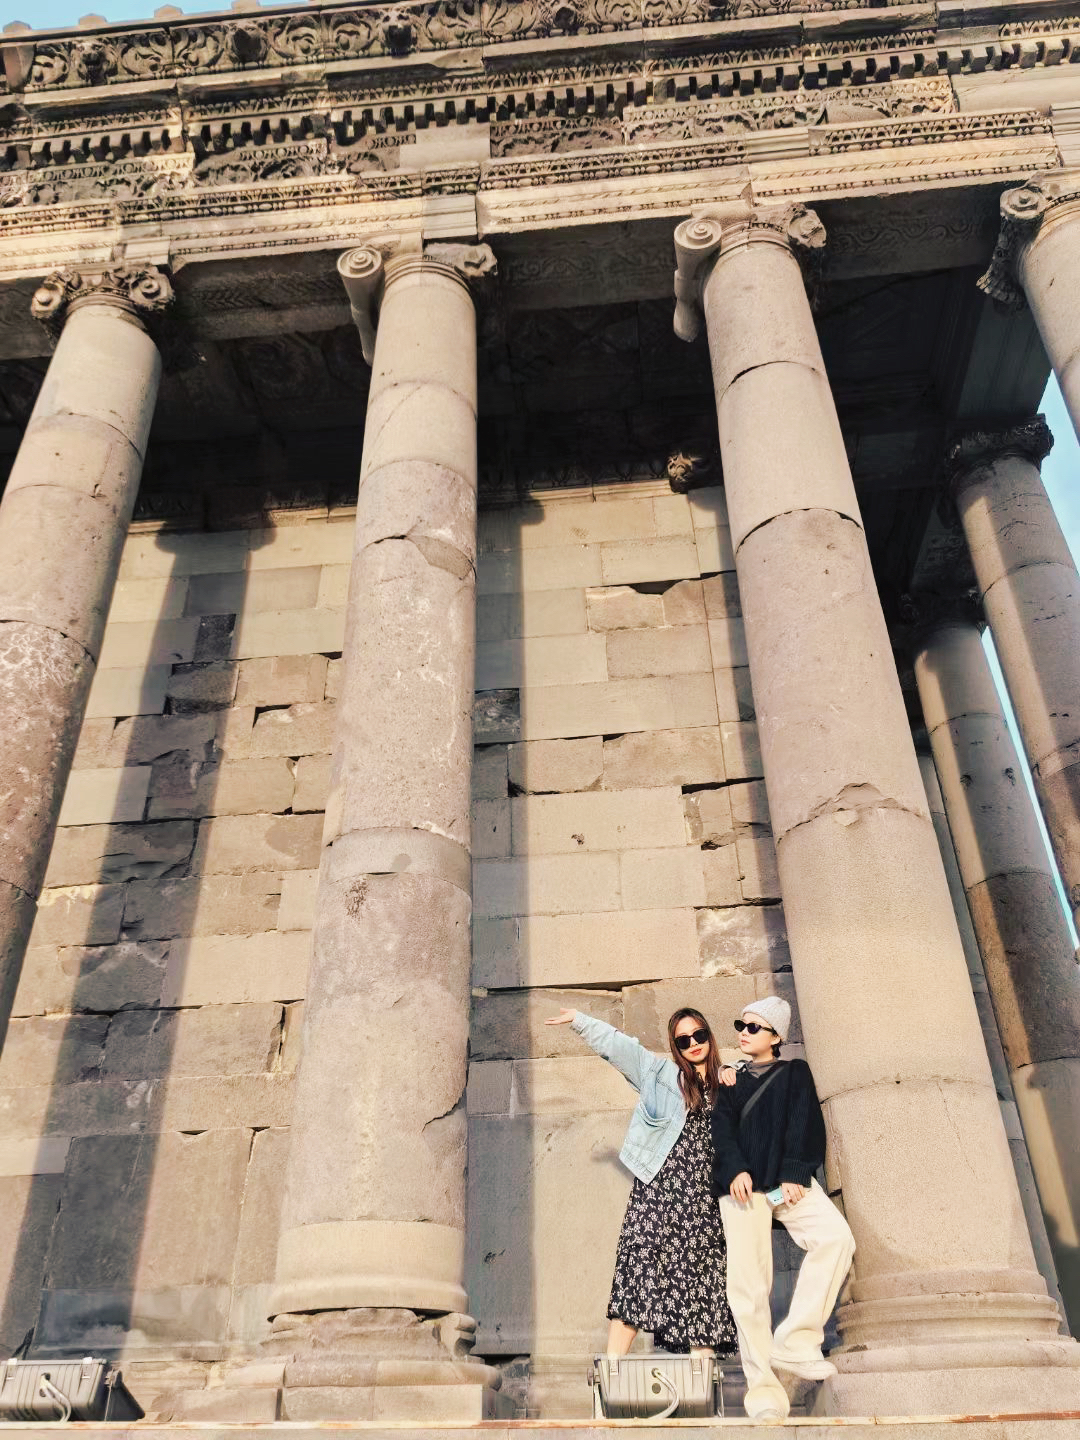 不是希腊‼️是亚美尼亚的加尼神庙